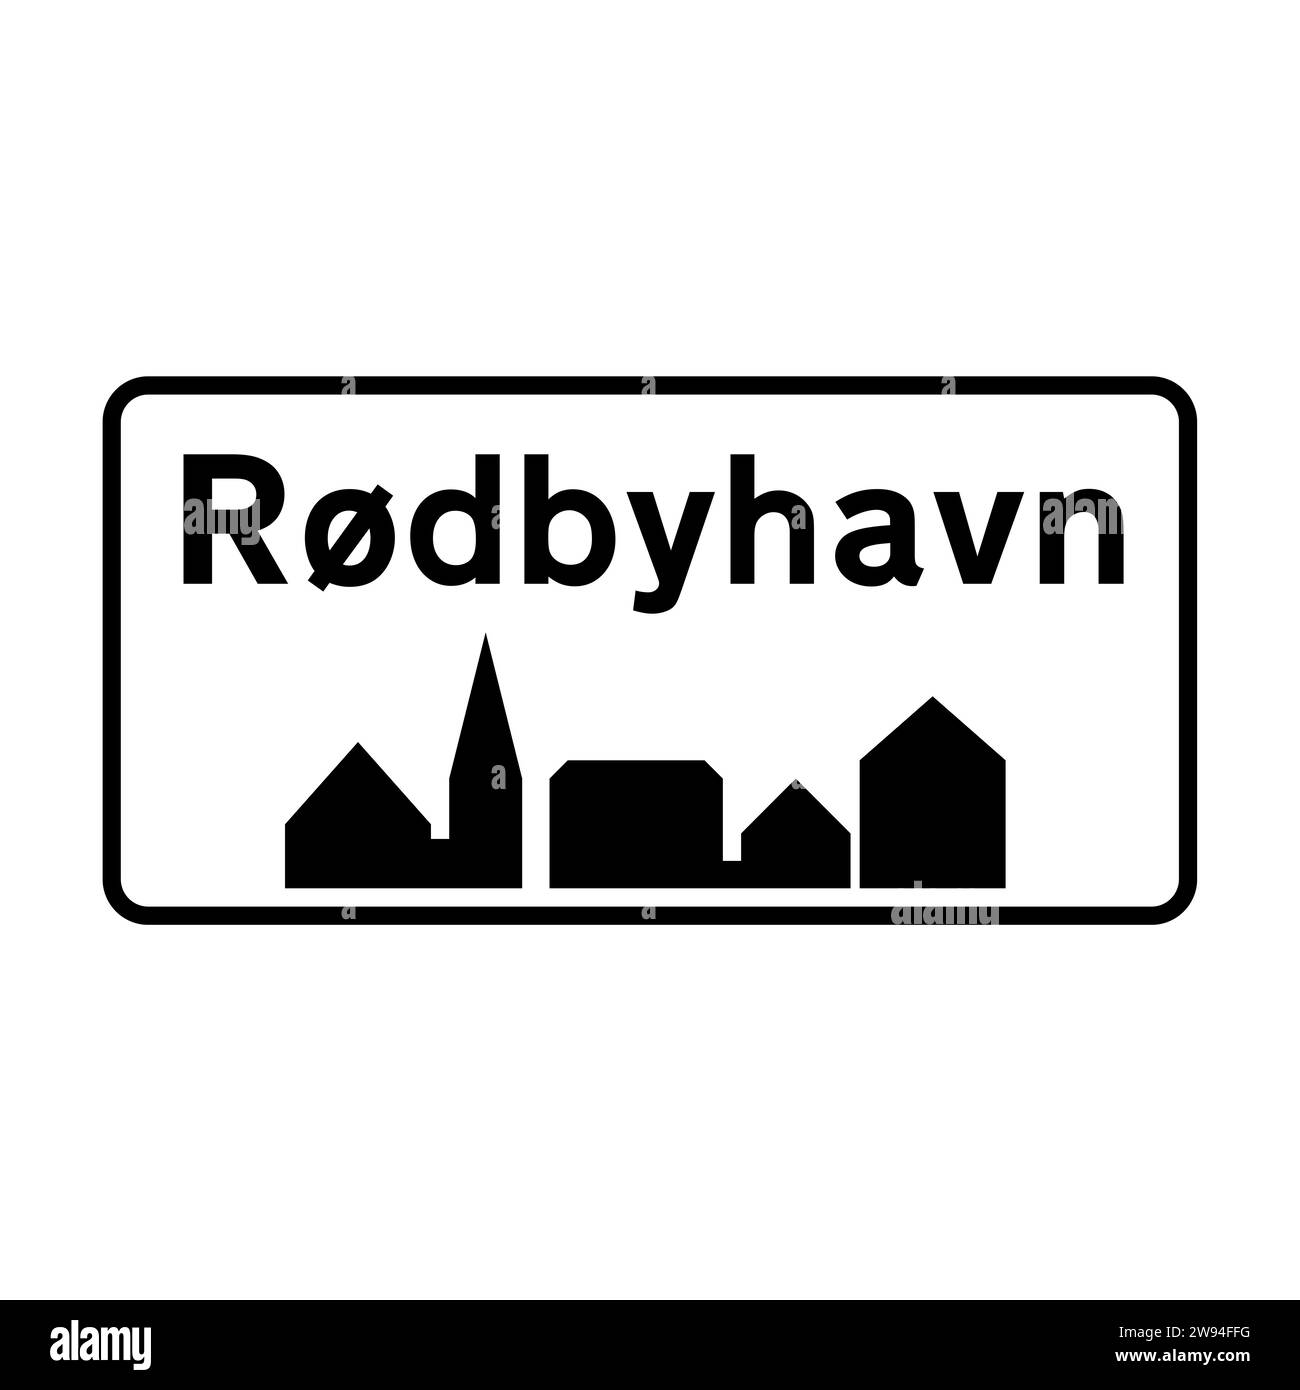 Rødbyhavn city road sign in Denmark Stock Photo